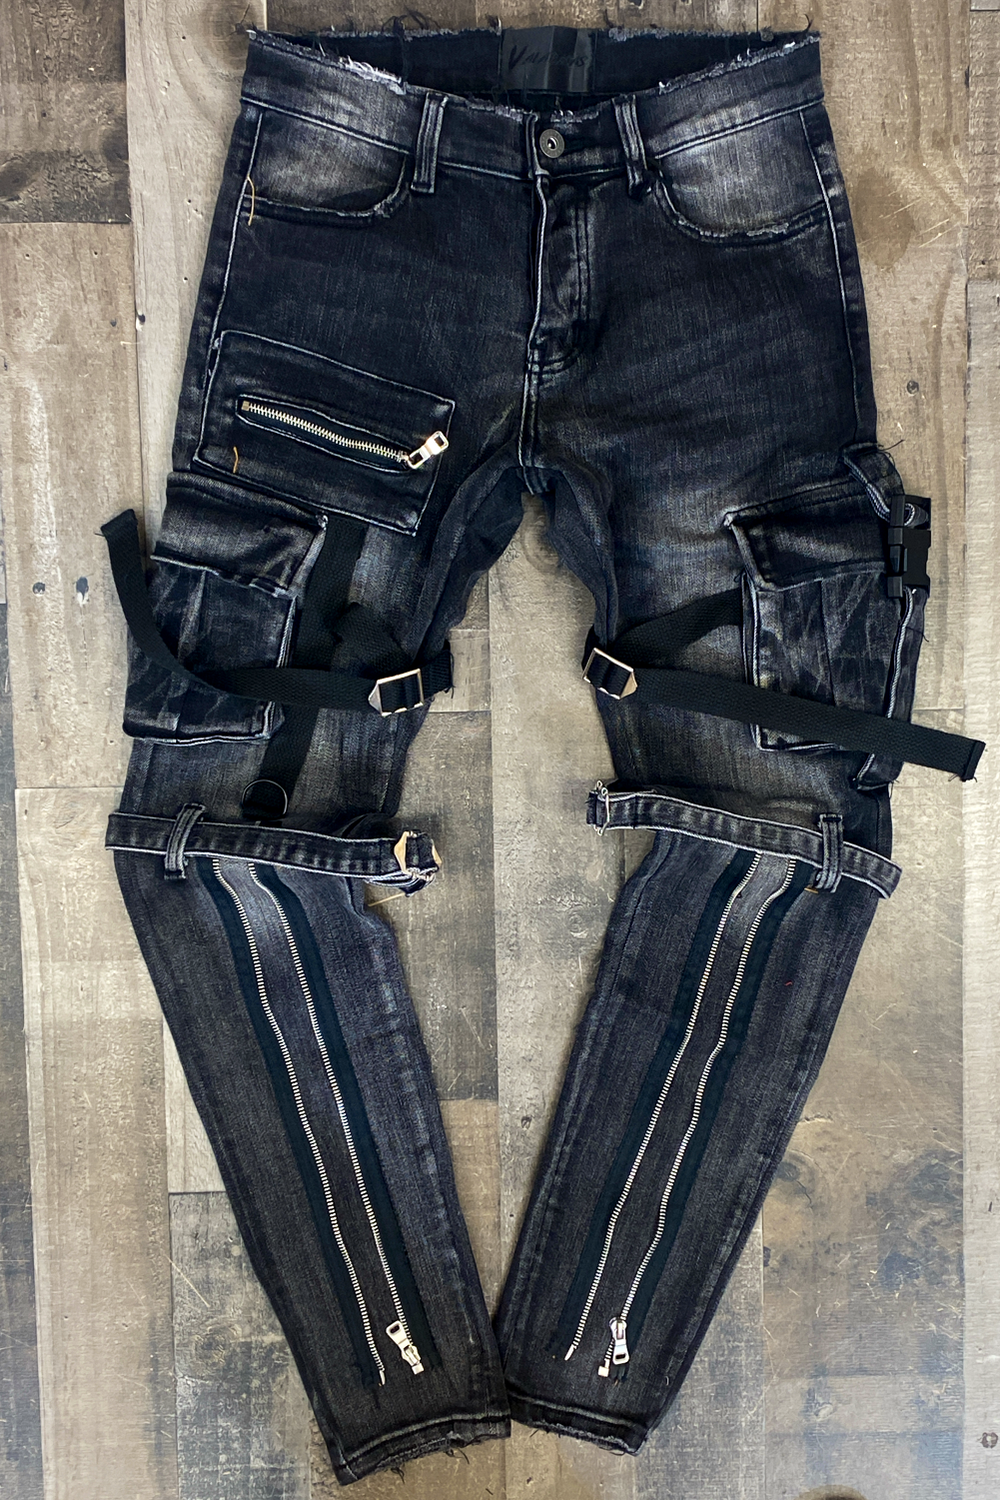 Valabasas- archer jeans